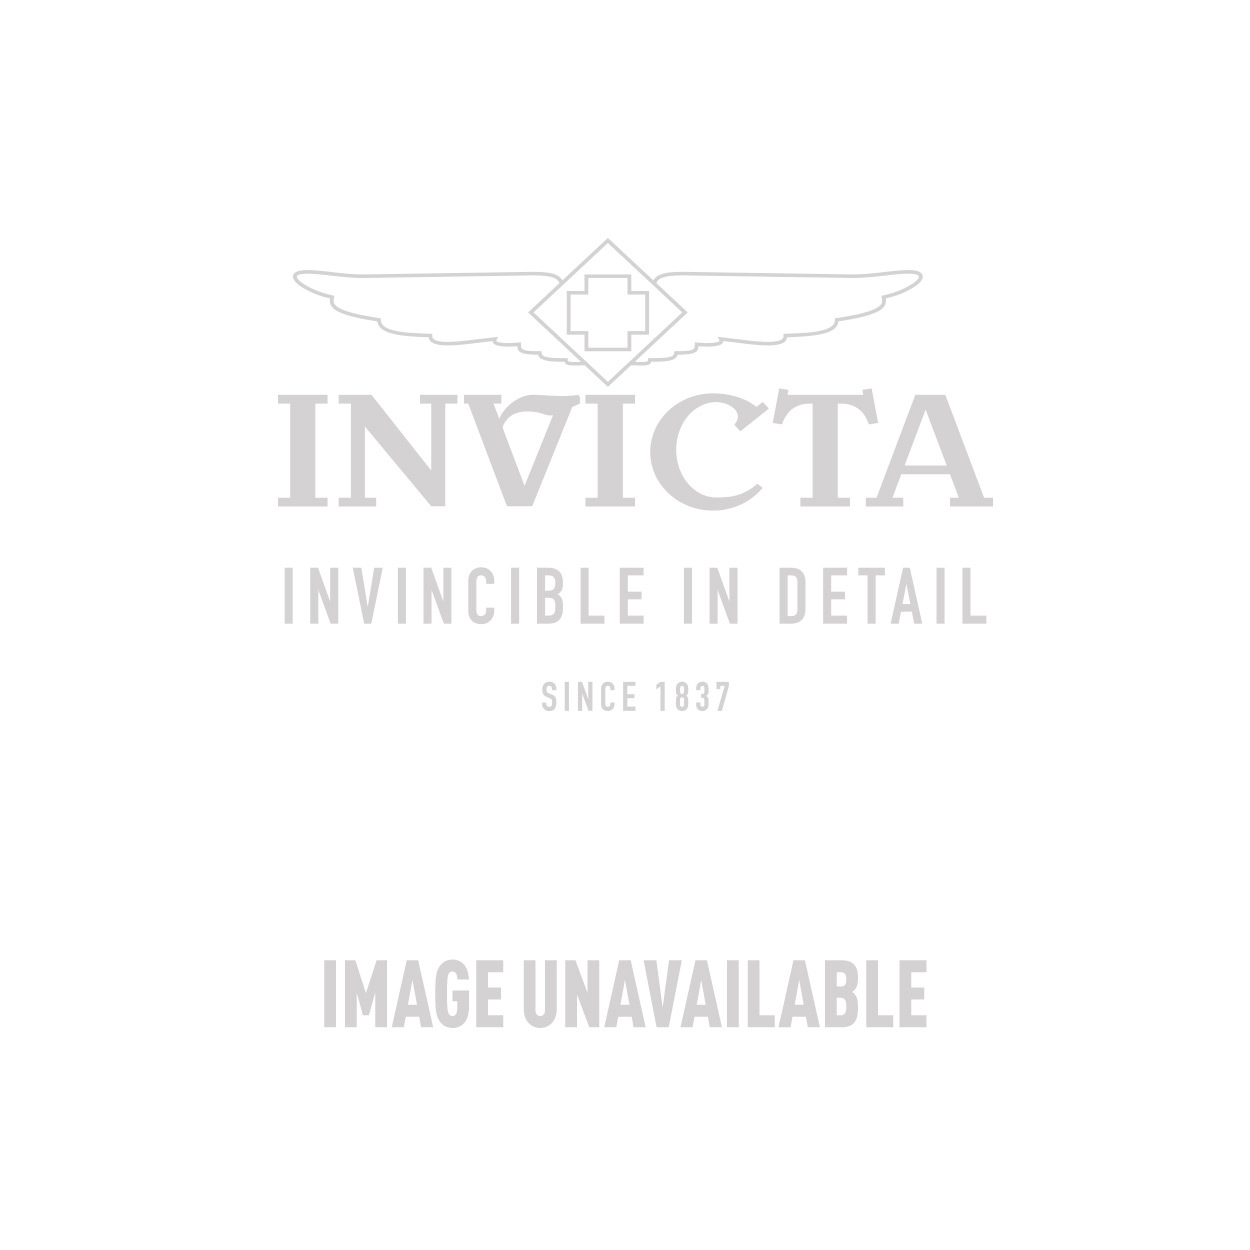 Invicta Model 30643